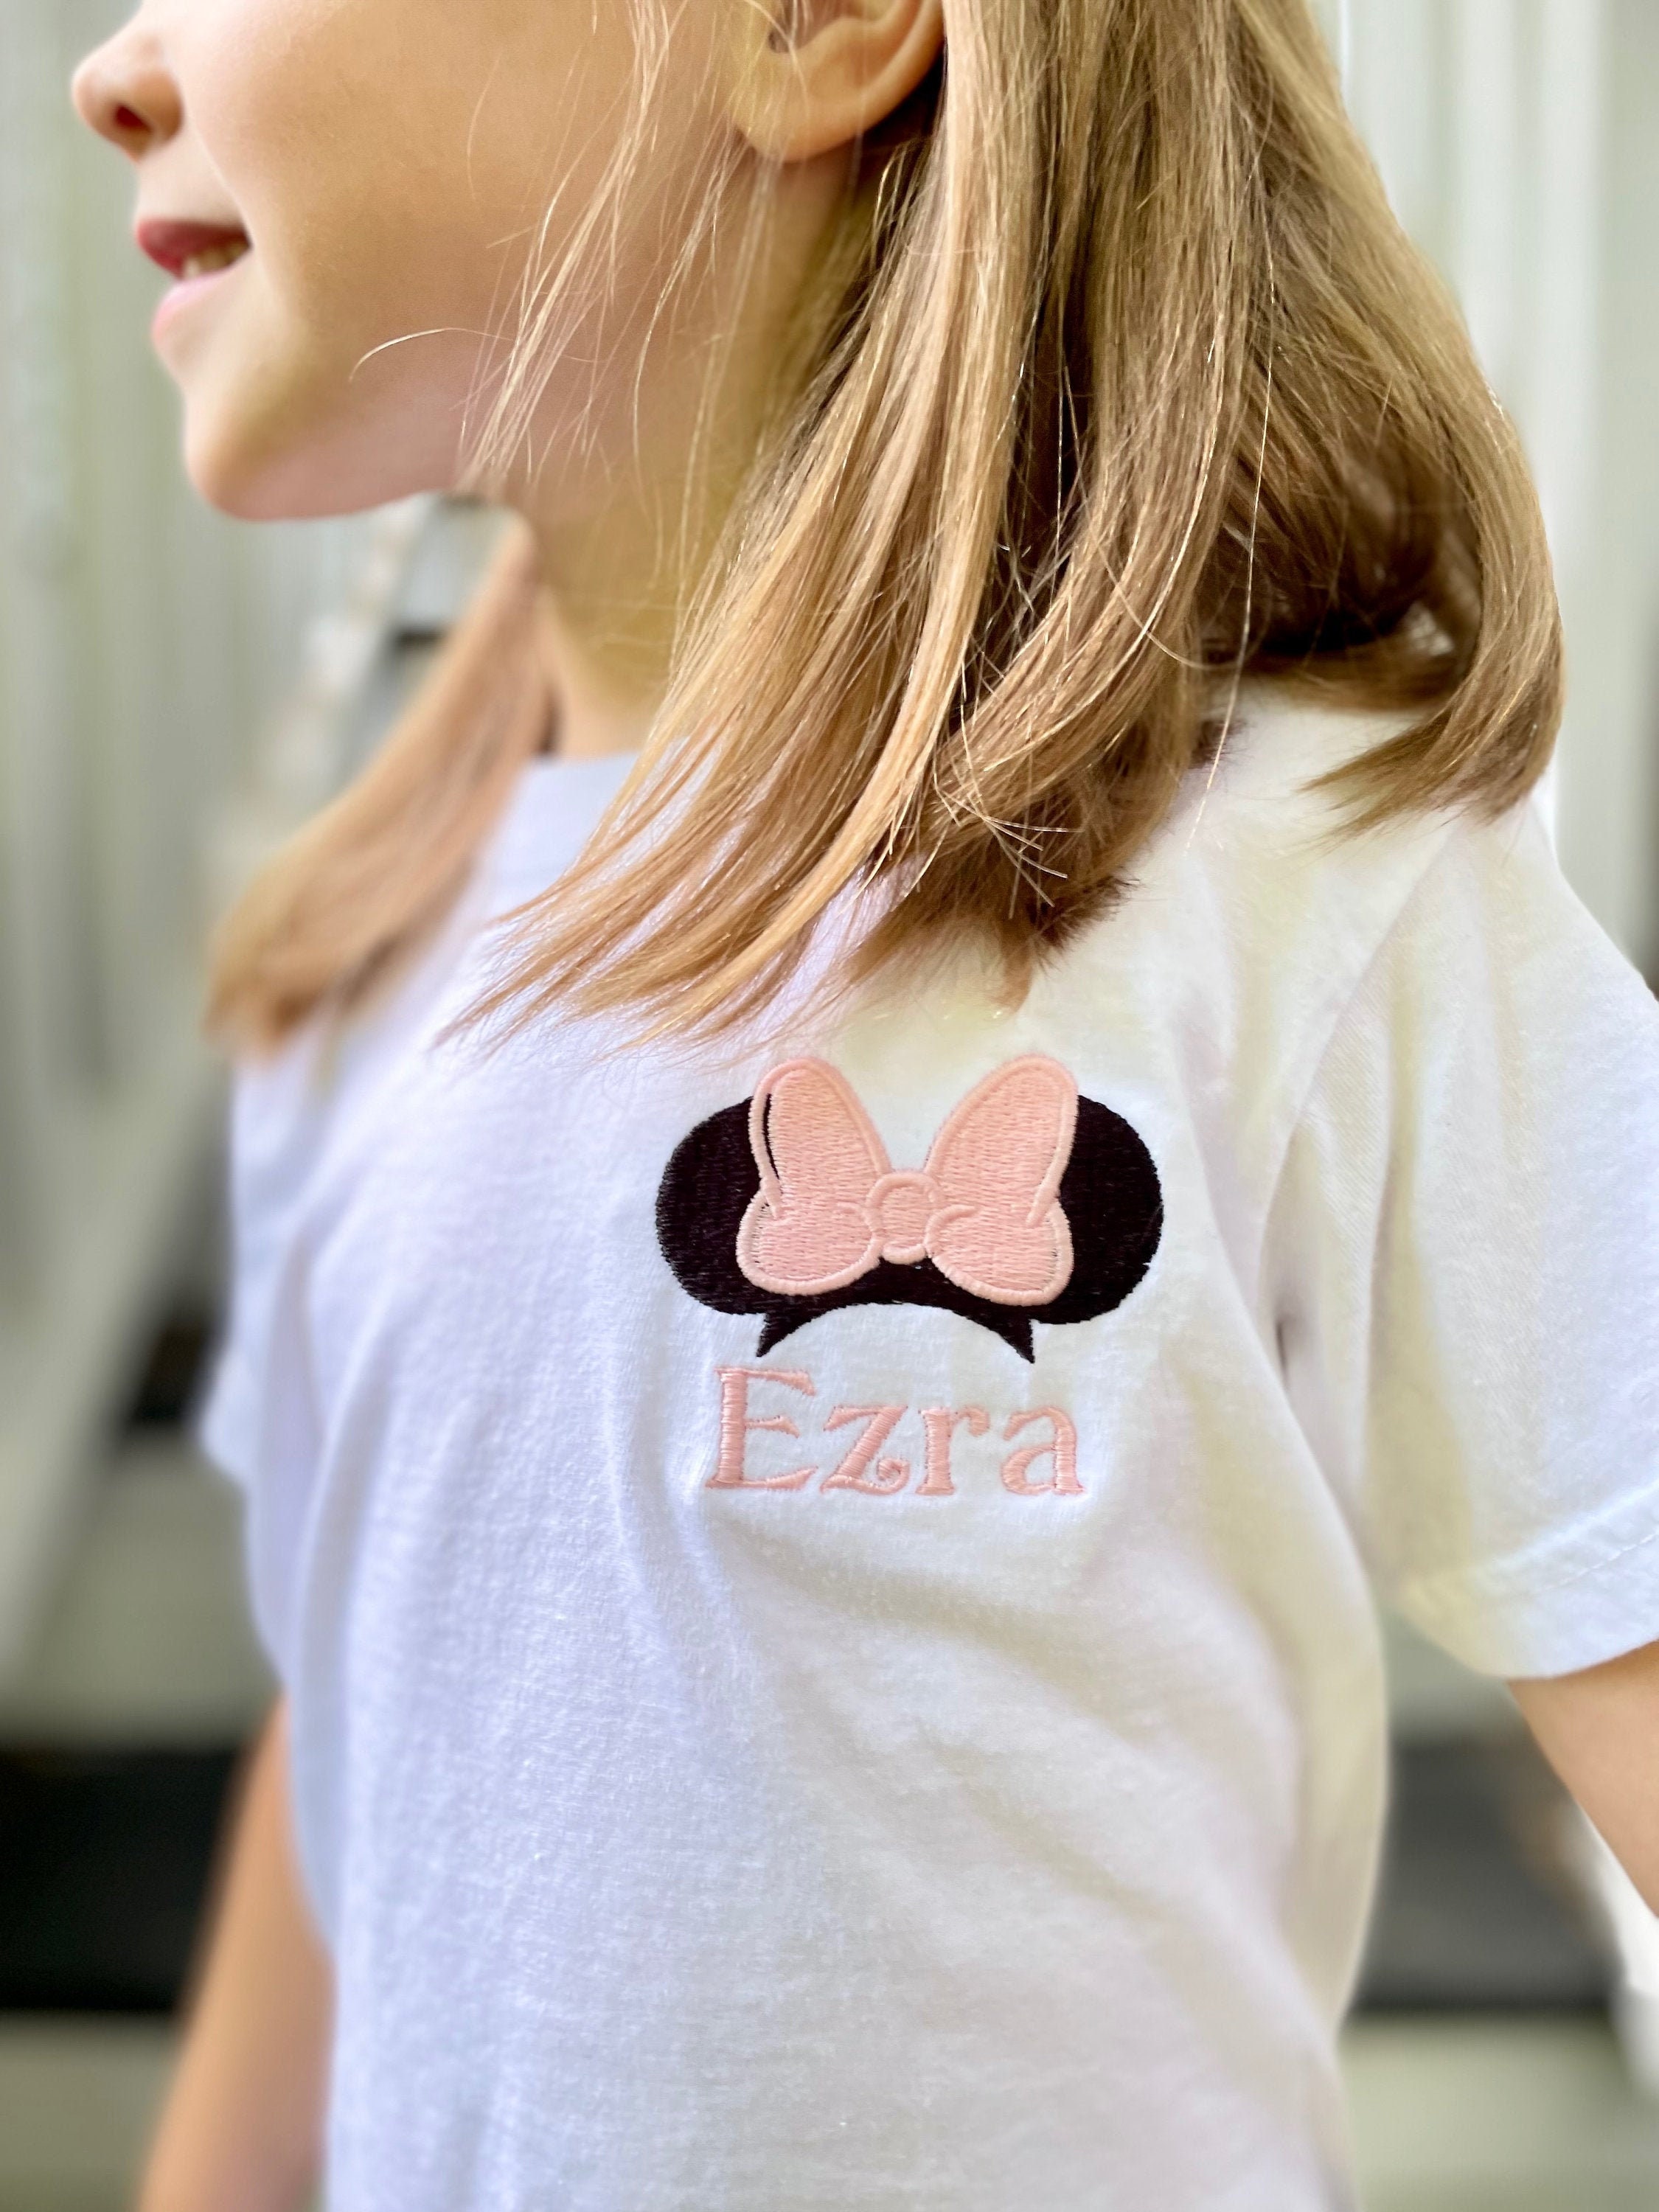 Disney Store - Minnie Maus - Sweatshirt für Damen